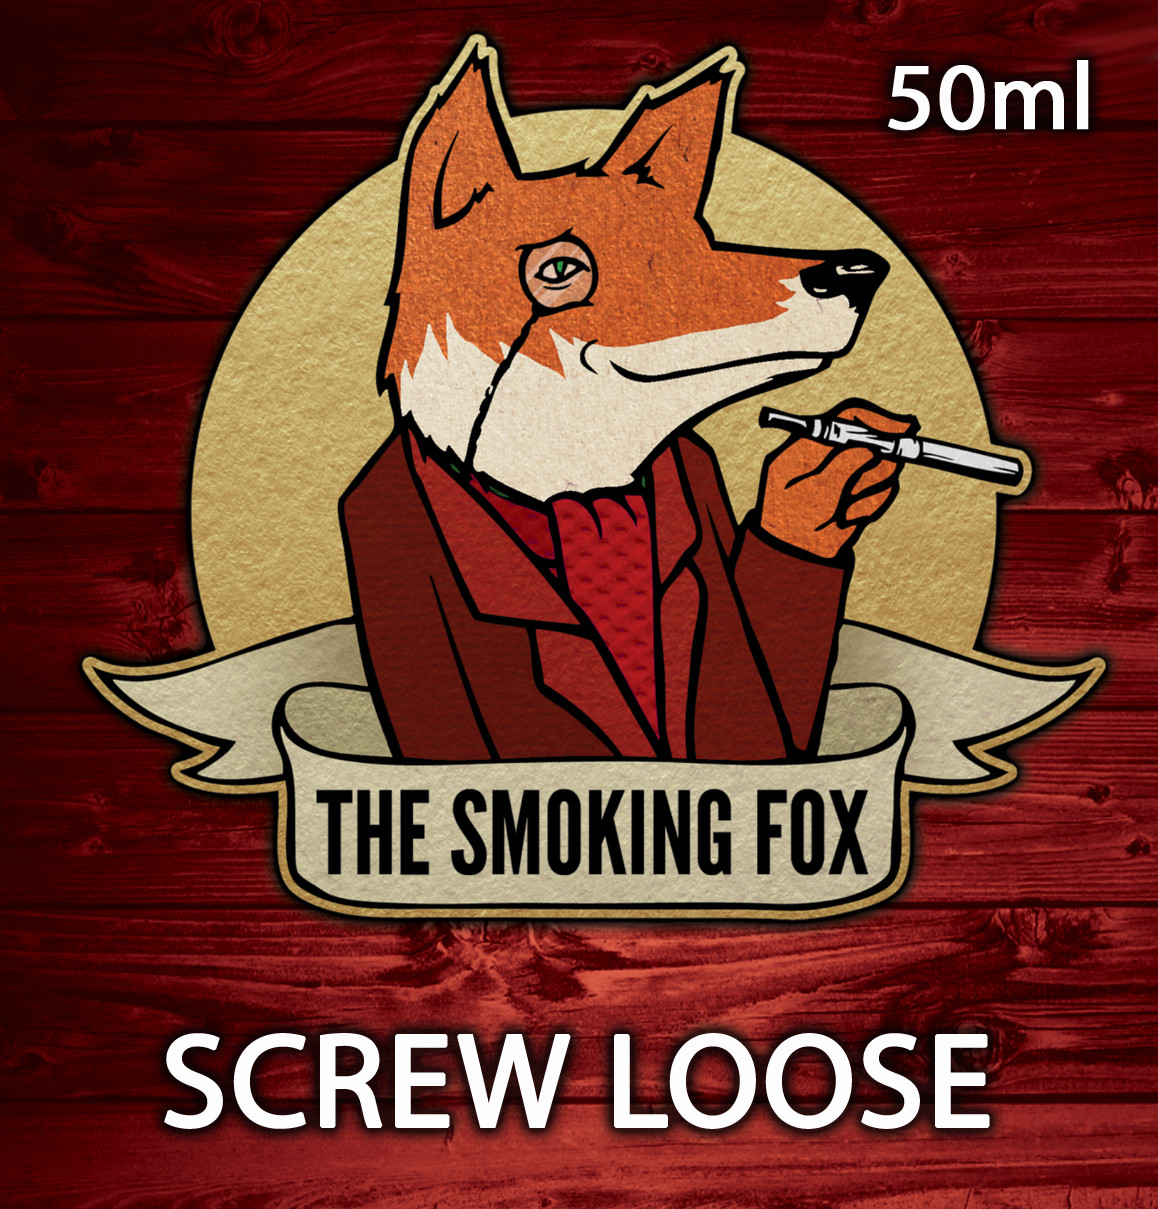 THE SMOKING FOX 50ml - SCREW LOOSE